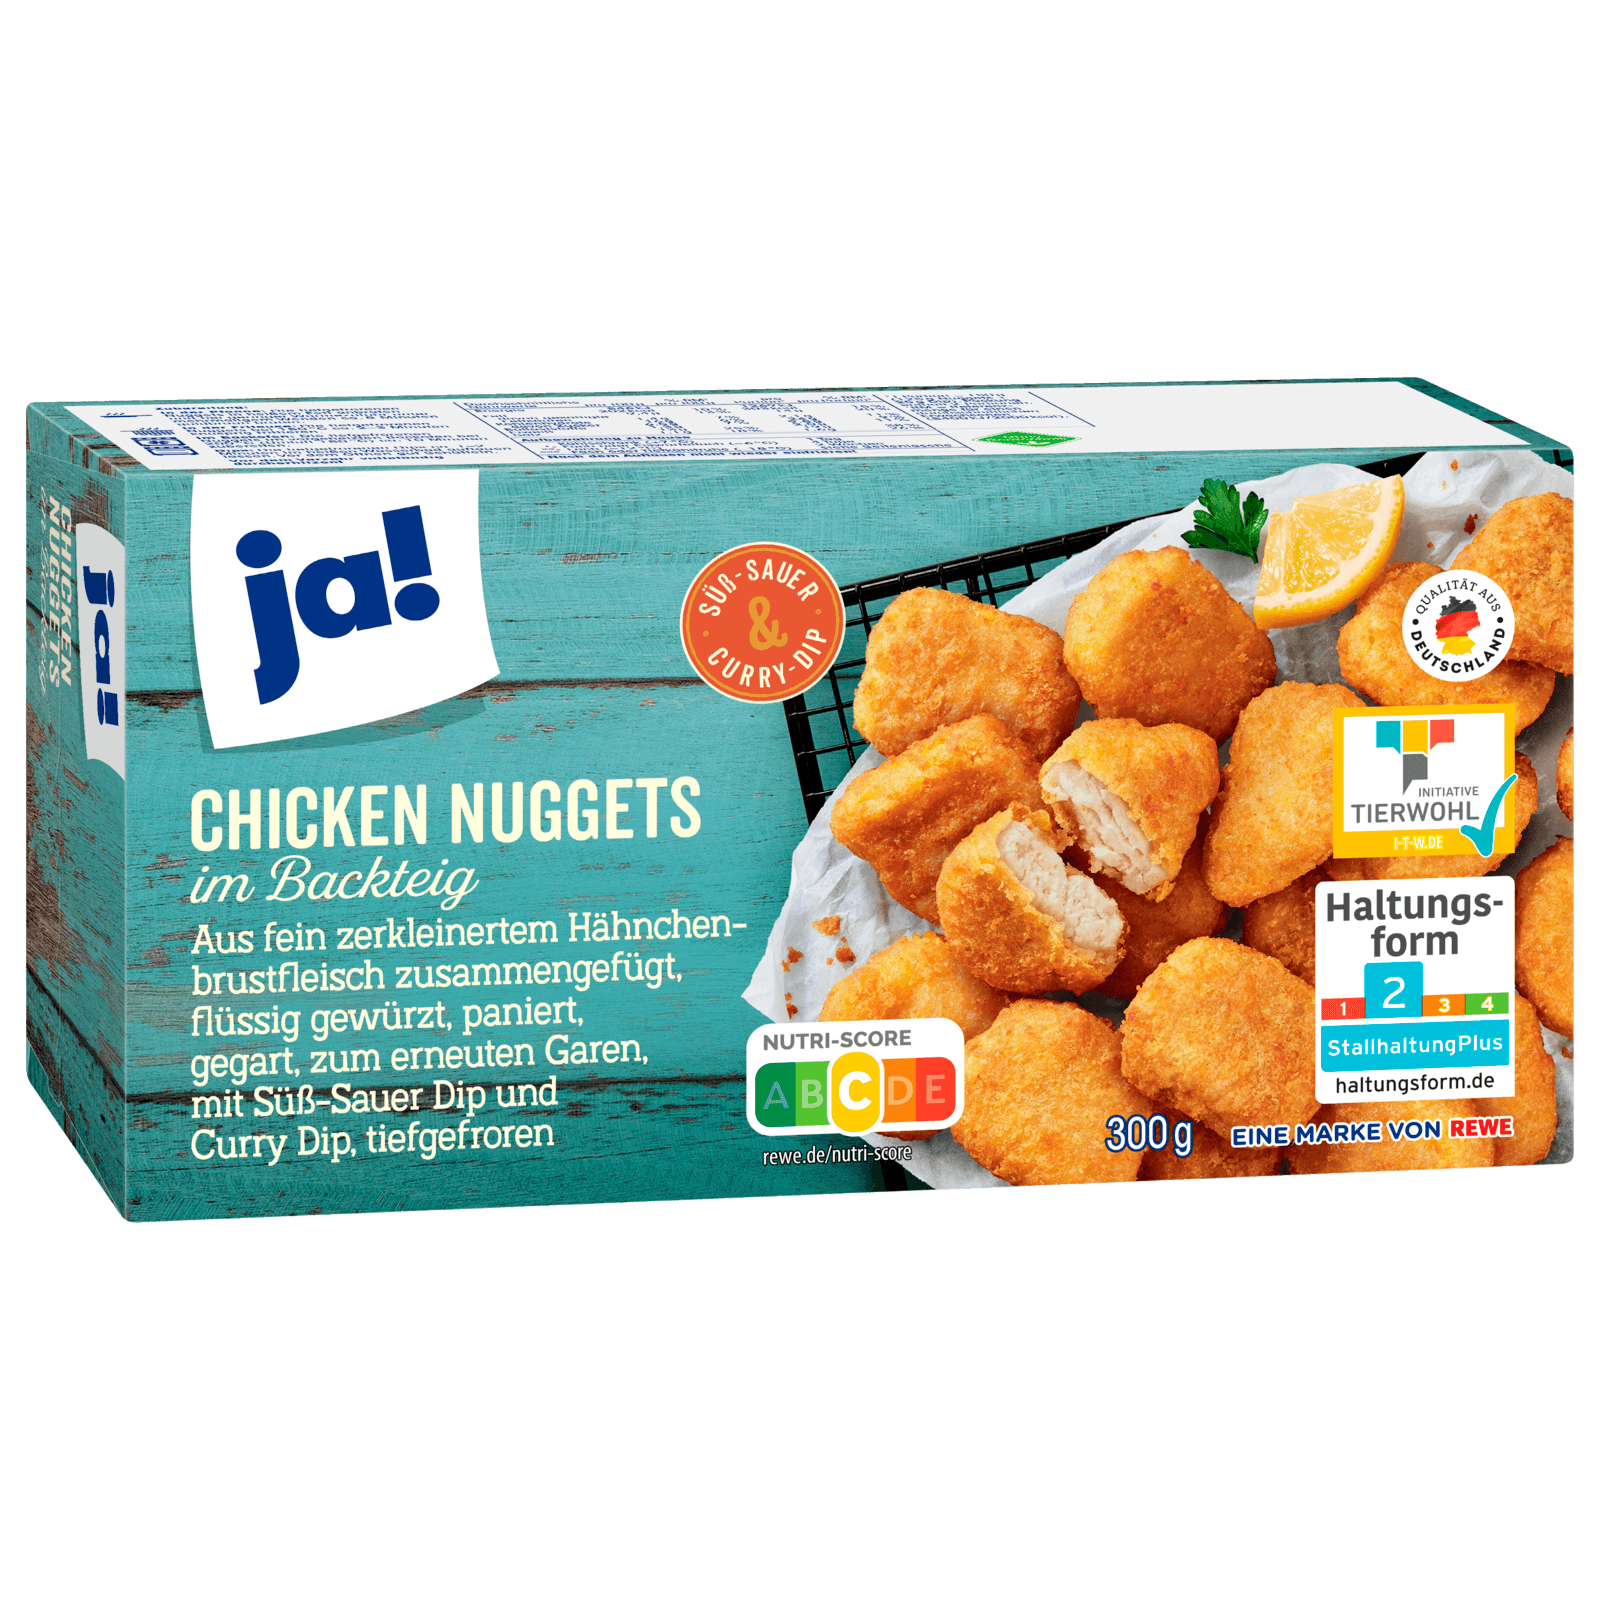 ja! Chicken Nuggets 300g bei REWE online bestellen!